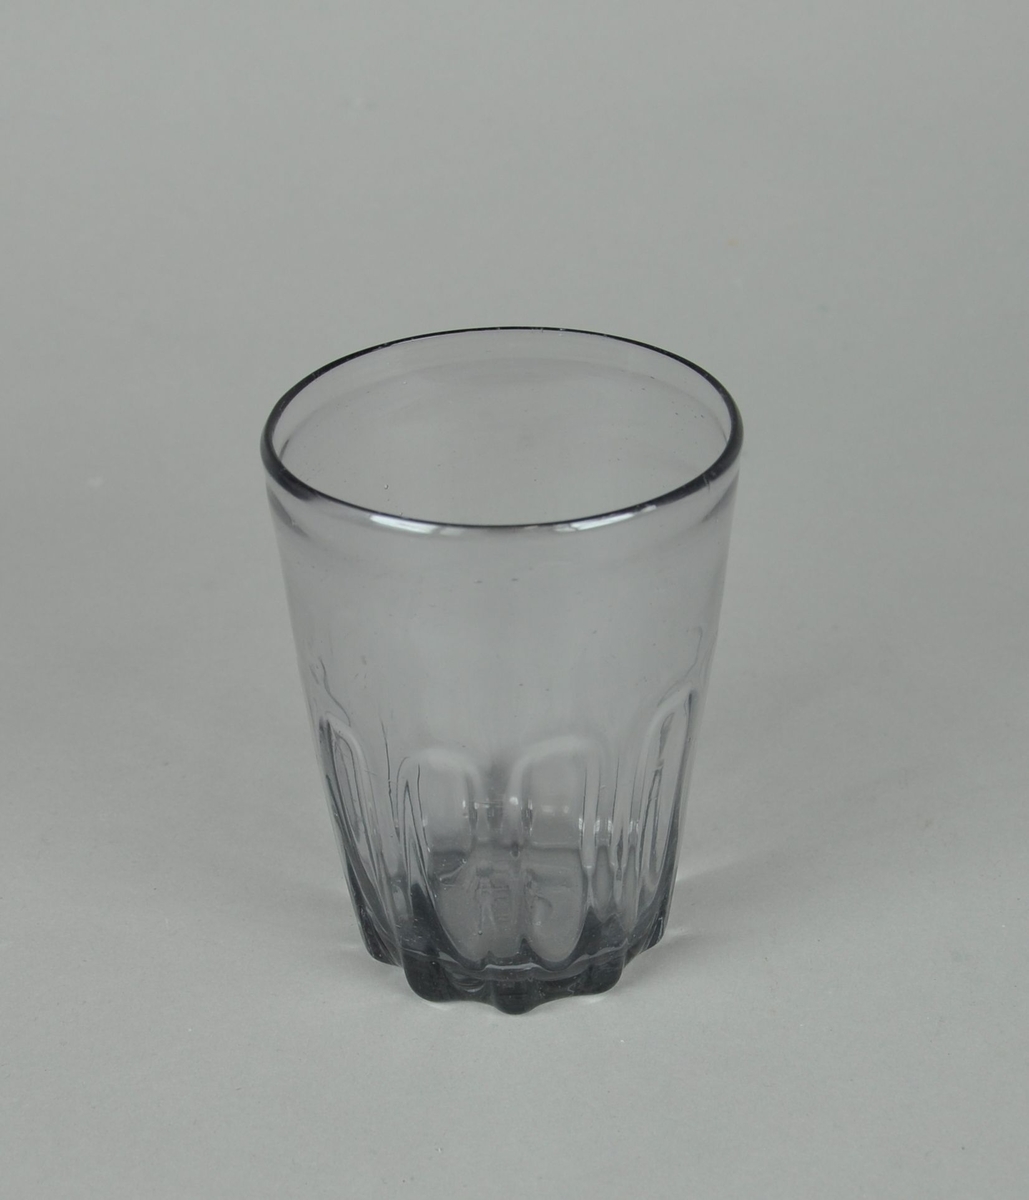 Blåst ølglass. Sylindrisk glass, med dekorative innsnevringer ved bunn. Innsnevringene er rektangulære, med avrundet topp.